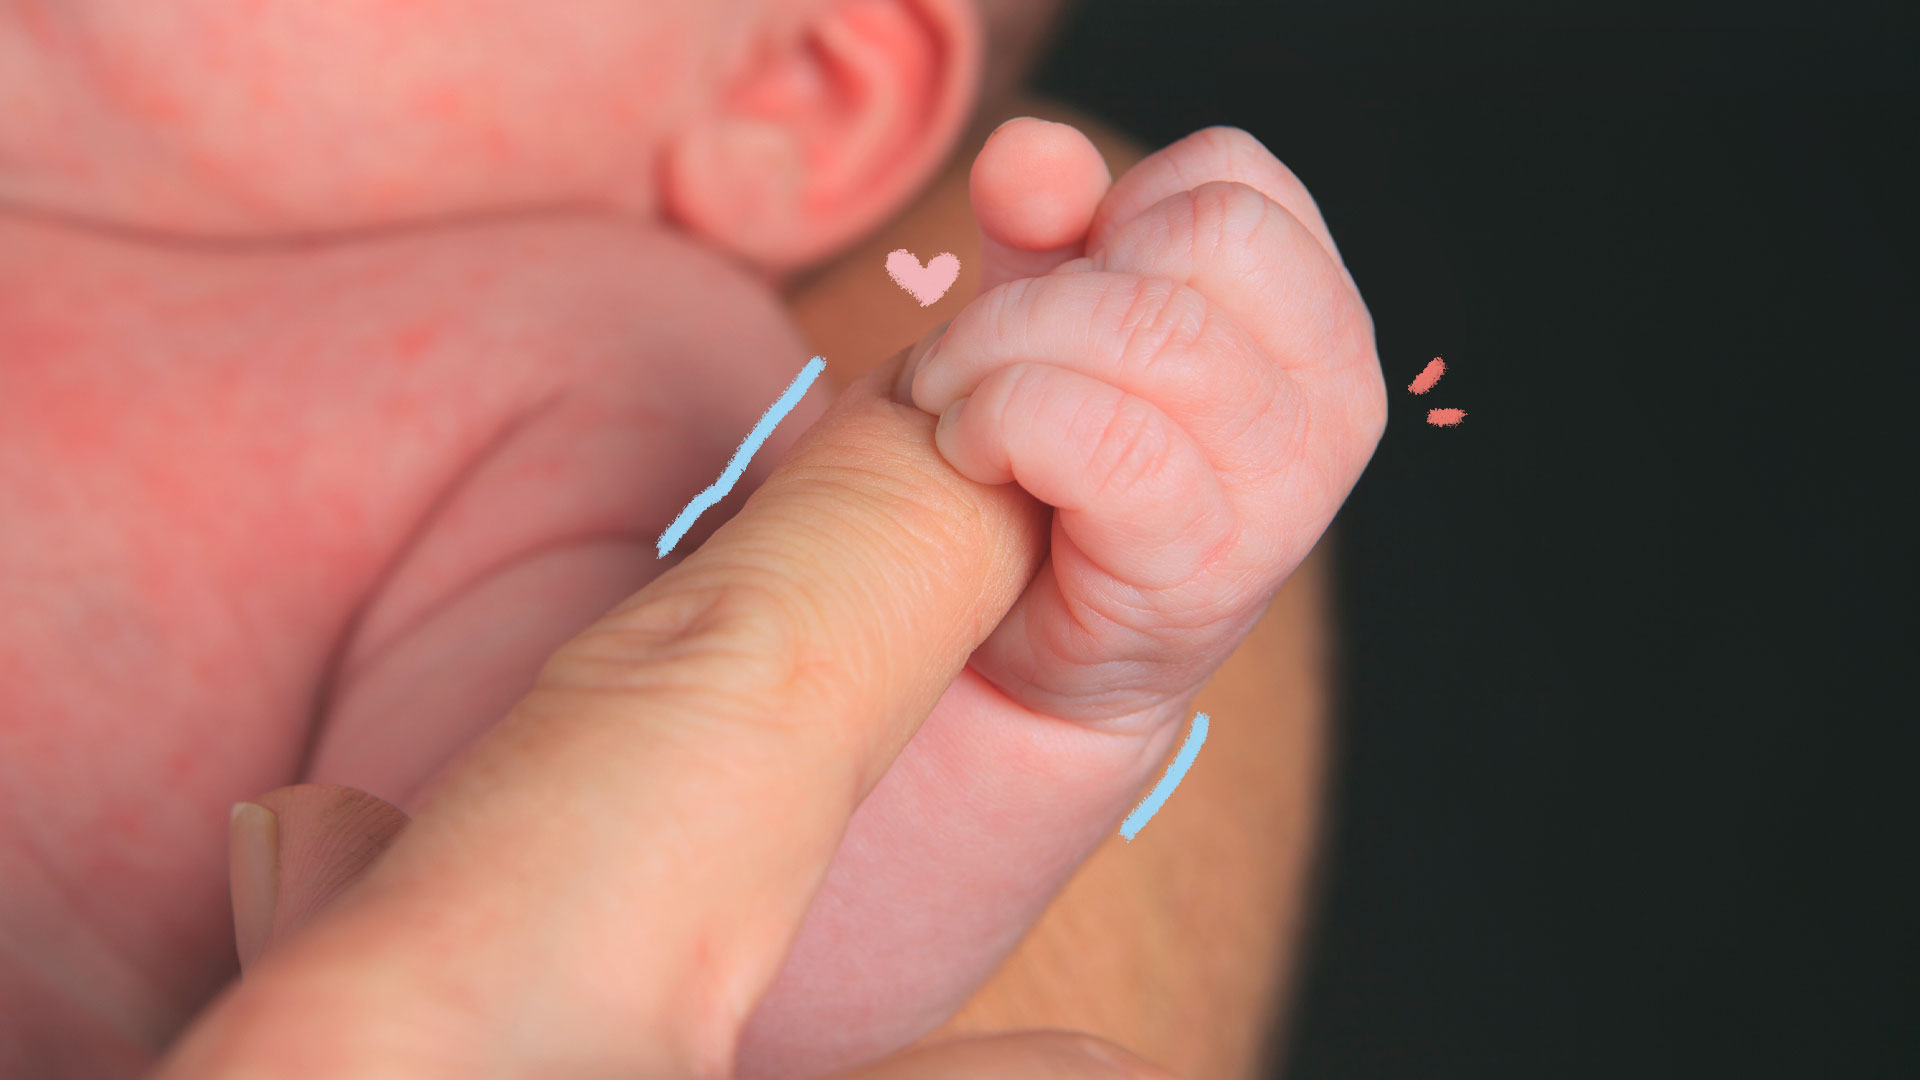 Imagem da mão de um bebê prematuro segurando o dedo de um adulto. Ambos possuem pele clara.